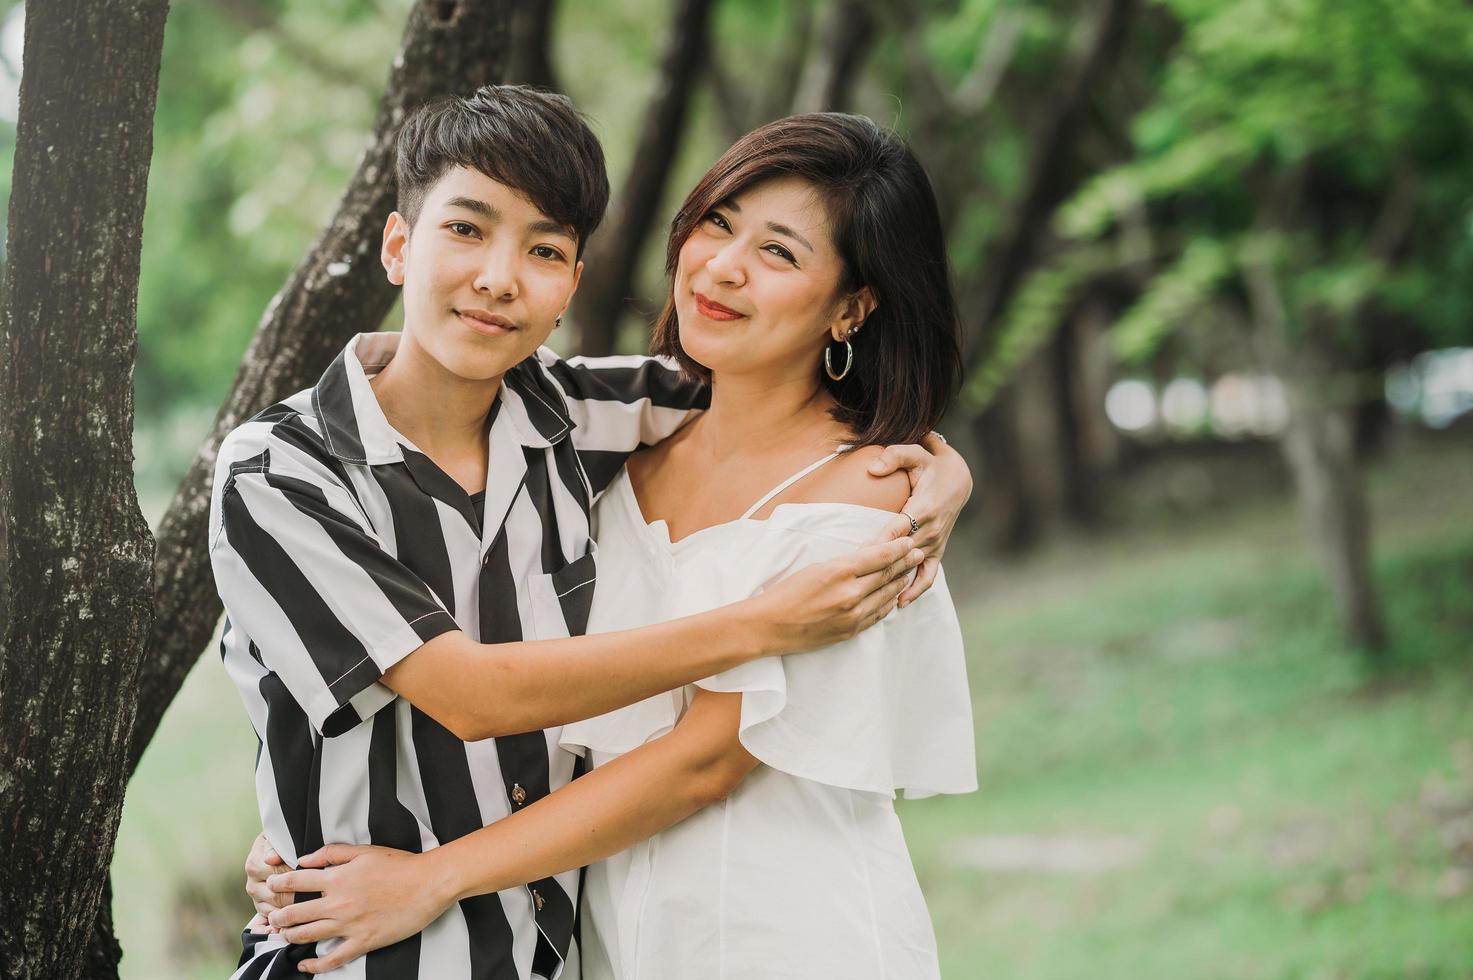 deux heureux couple asiatique lgbt dans le parc photo